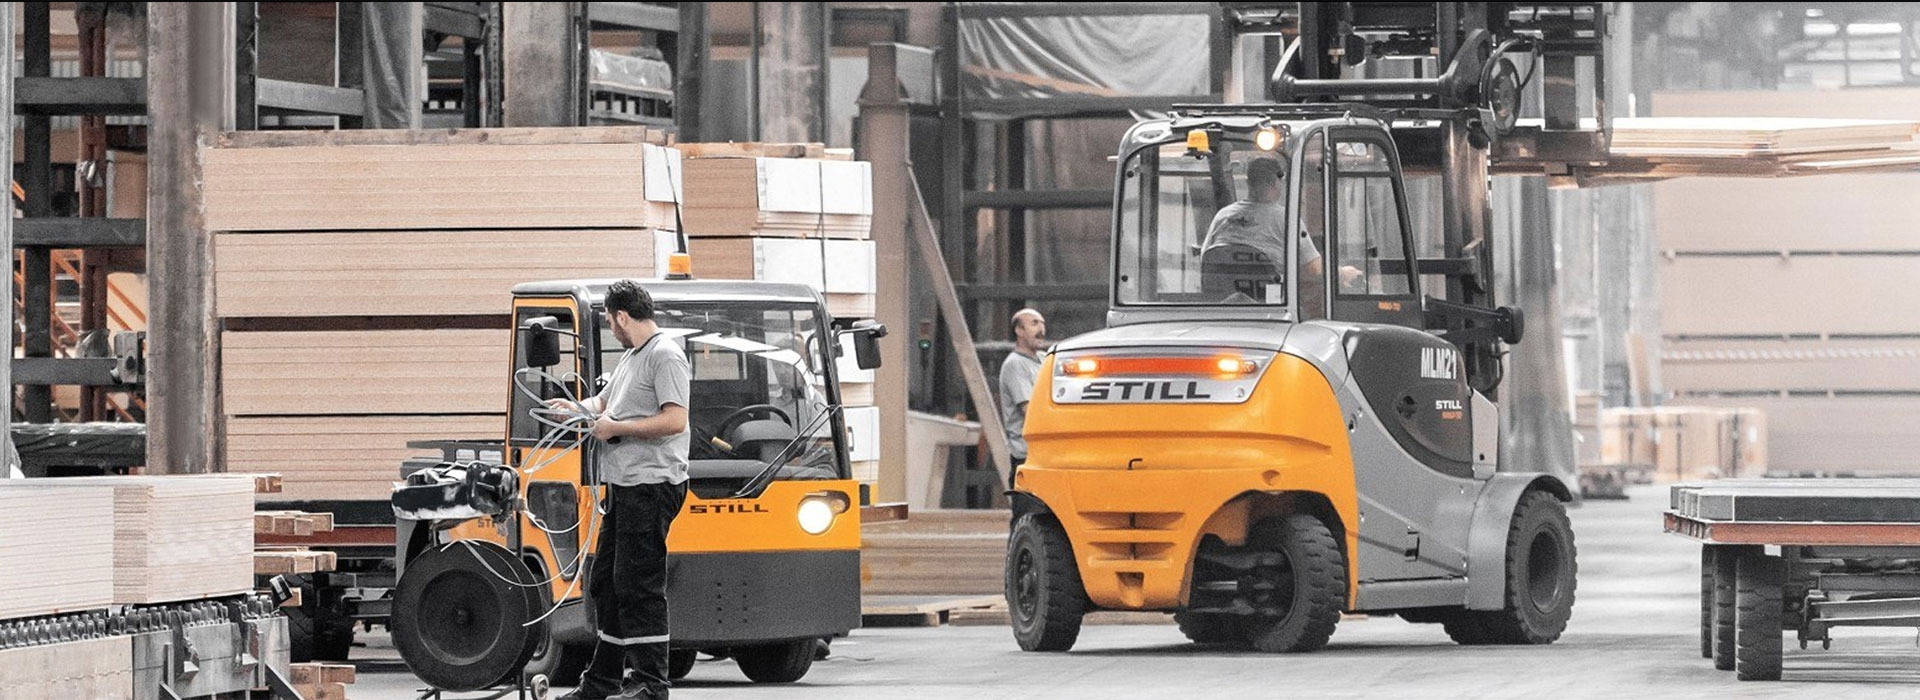 Still Forklift EM: Sahibinden Satýlýk, Kiralýk Forklift ve Forklift Servisi